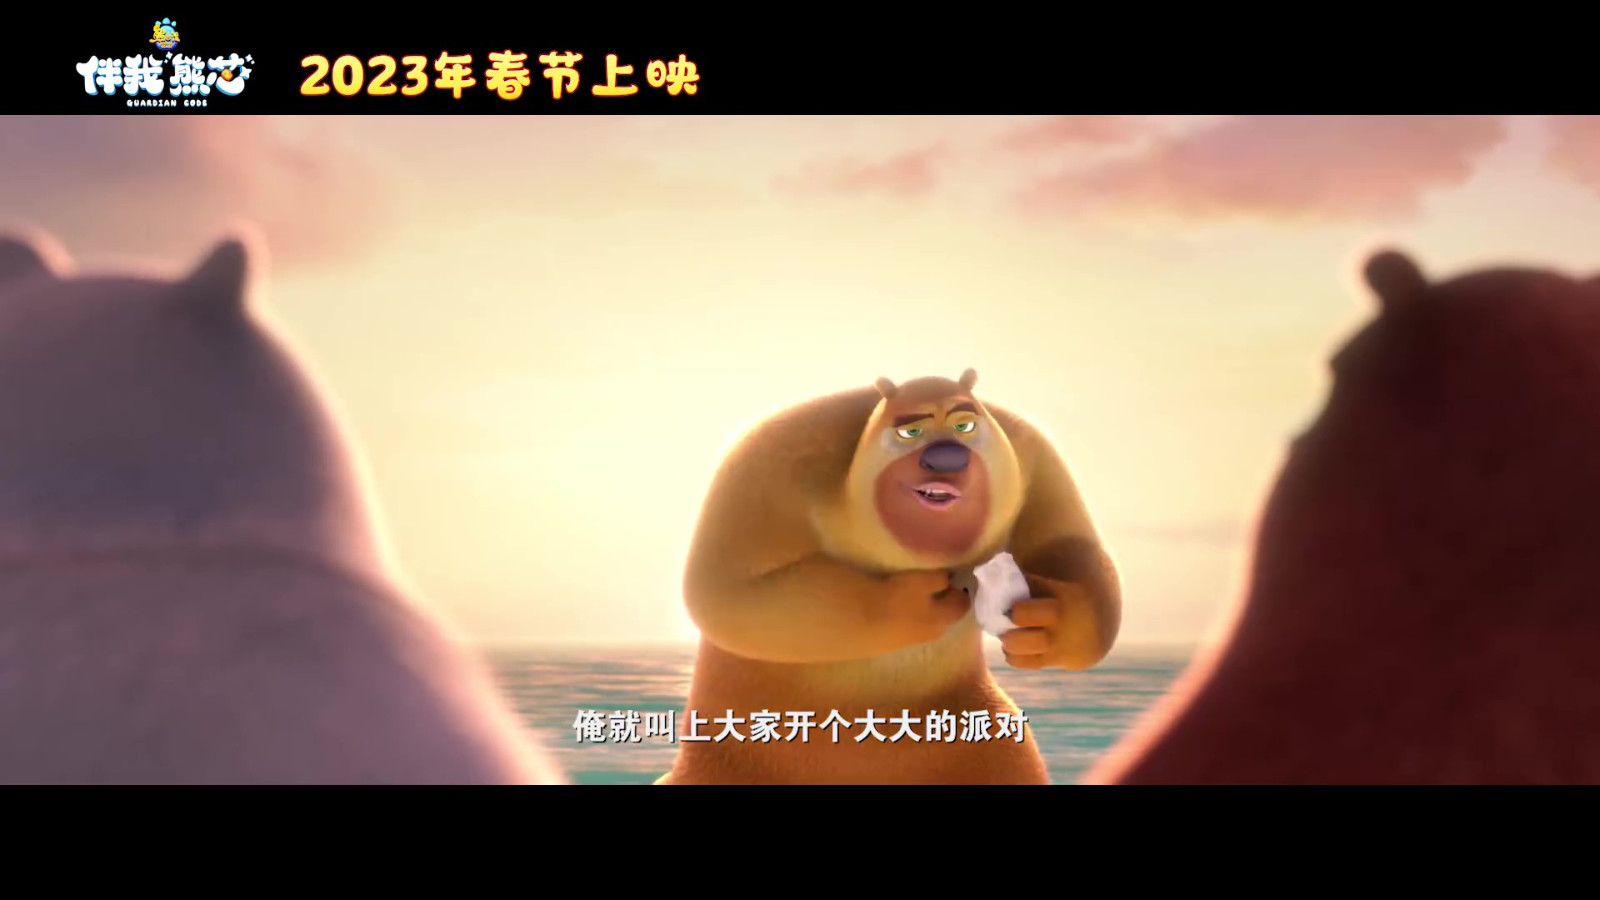 电影《熊出没·伴我“熊芯”》预告 2023年春节上映